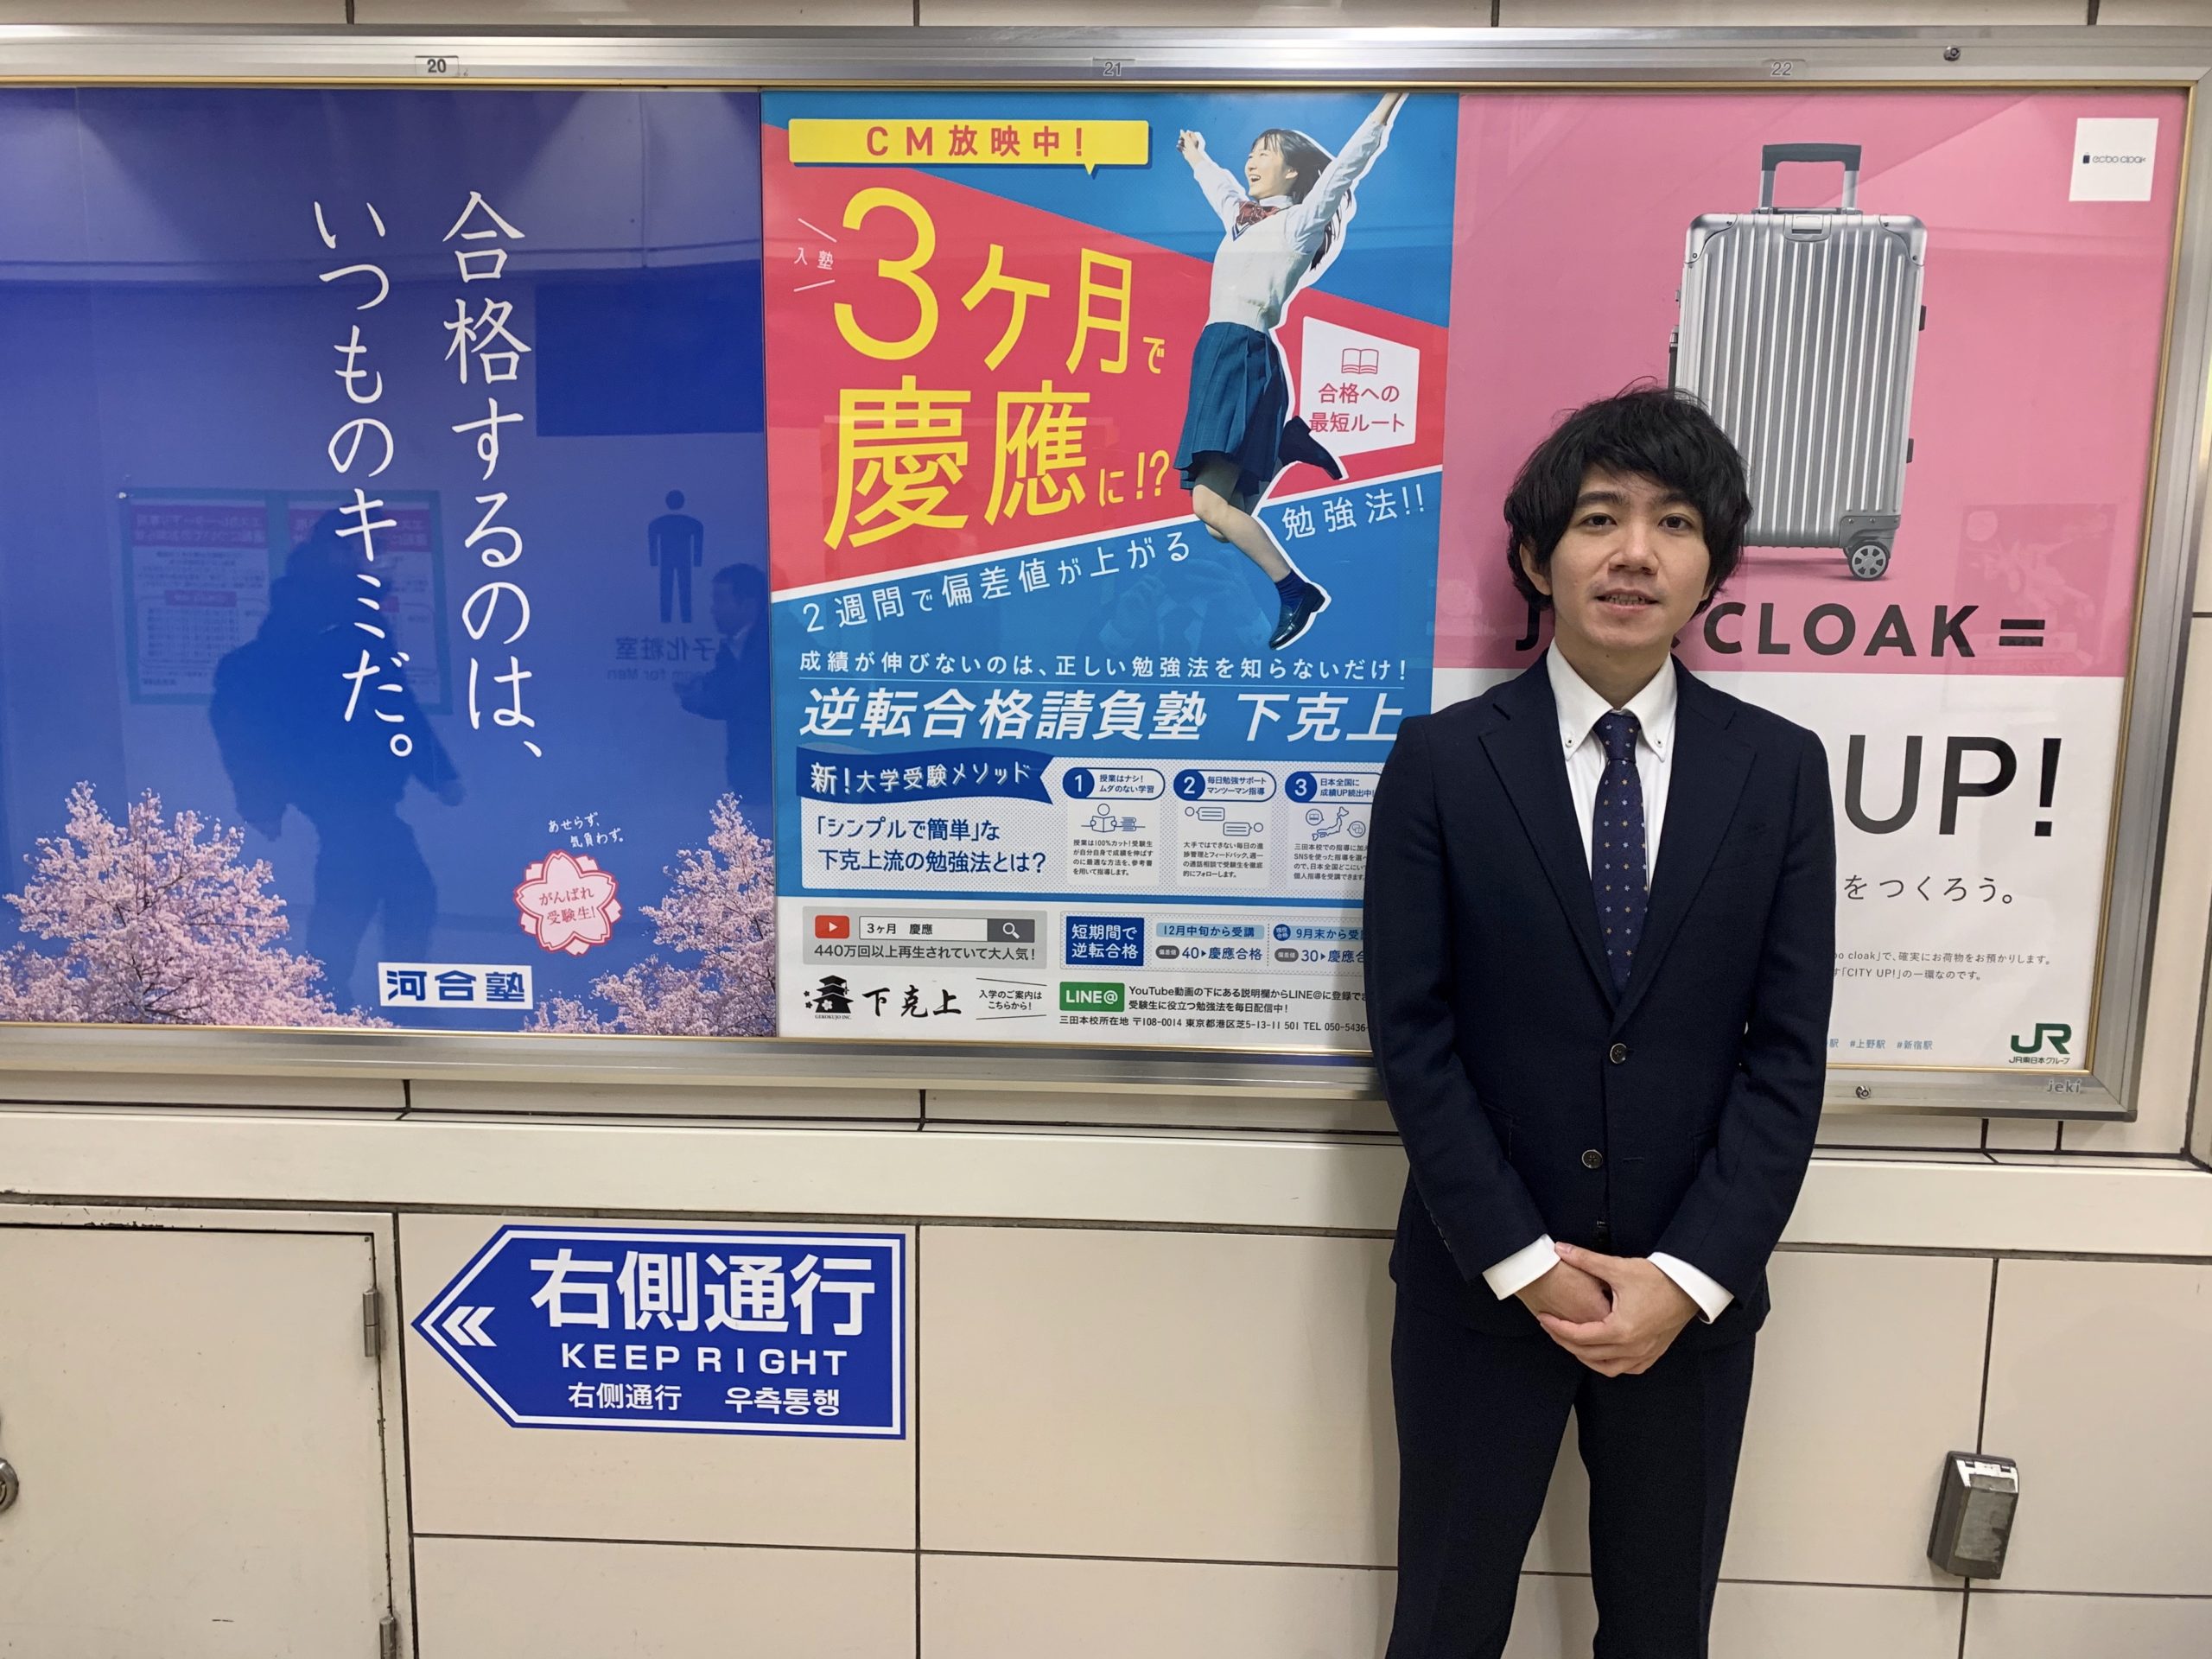 駅ポスター 慶應大学の最寄り駅jr 田町駅 にポスター掲出しました 下克上 大学受験個別指導塾